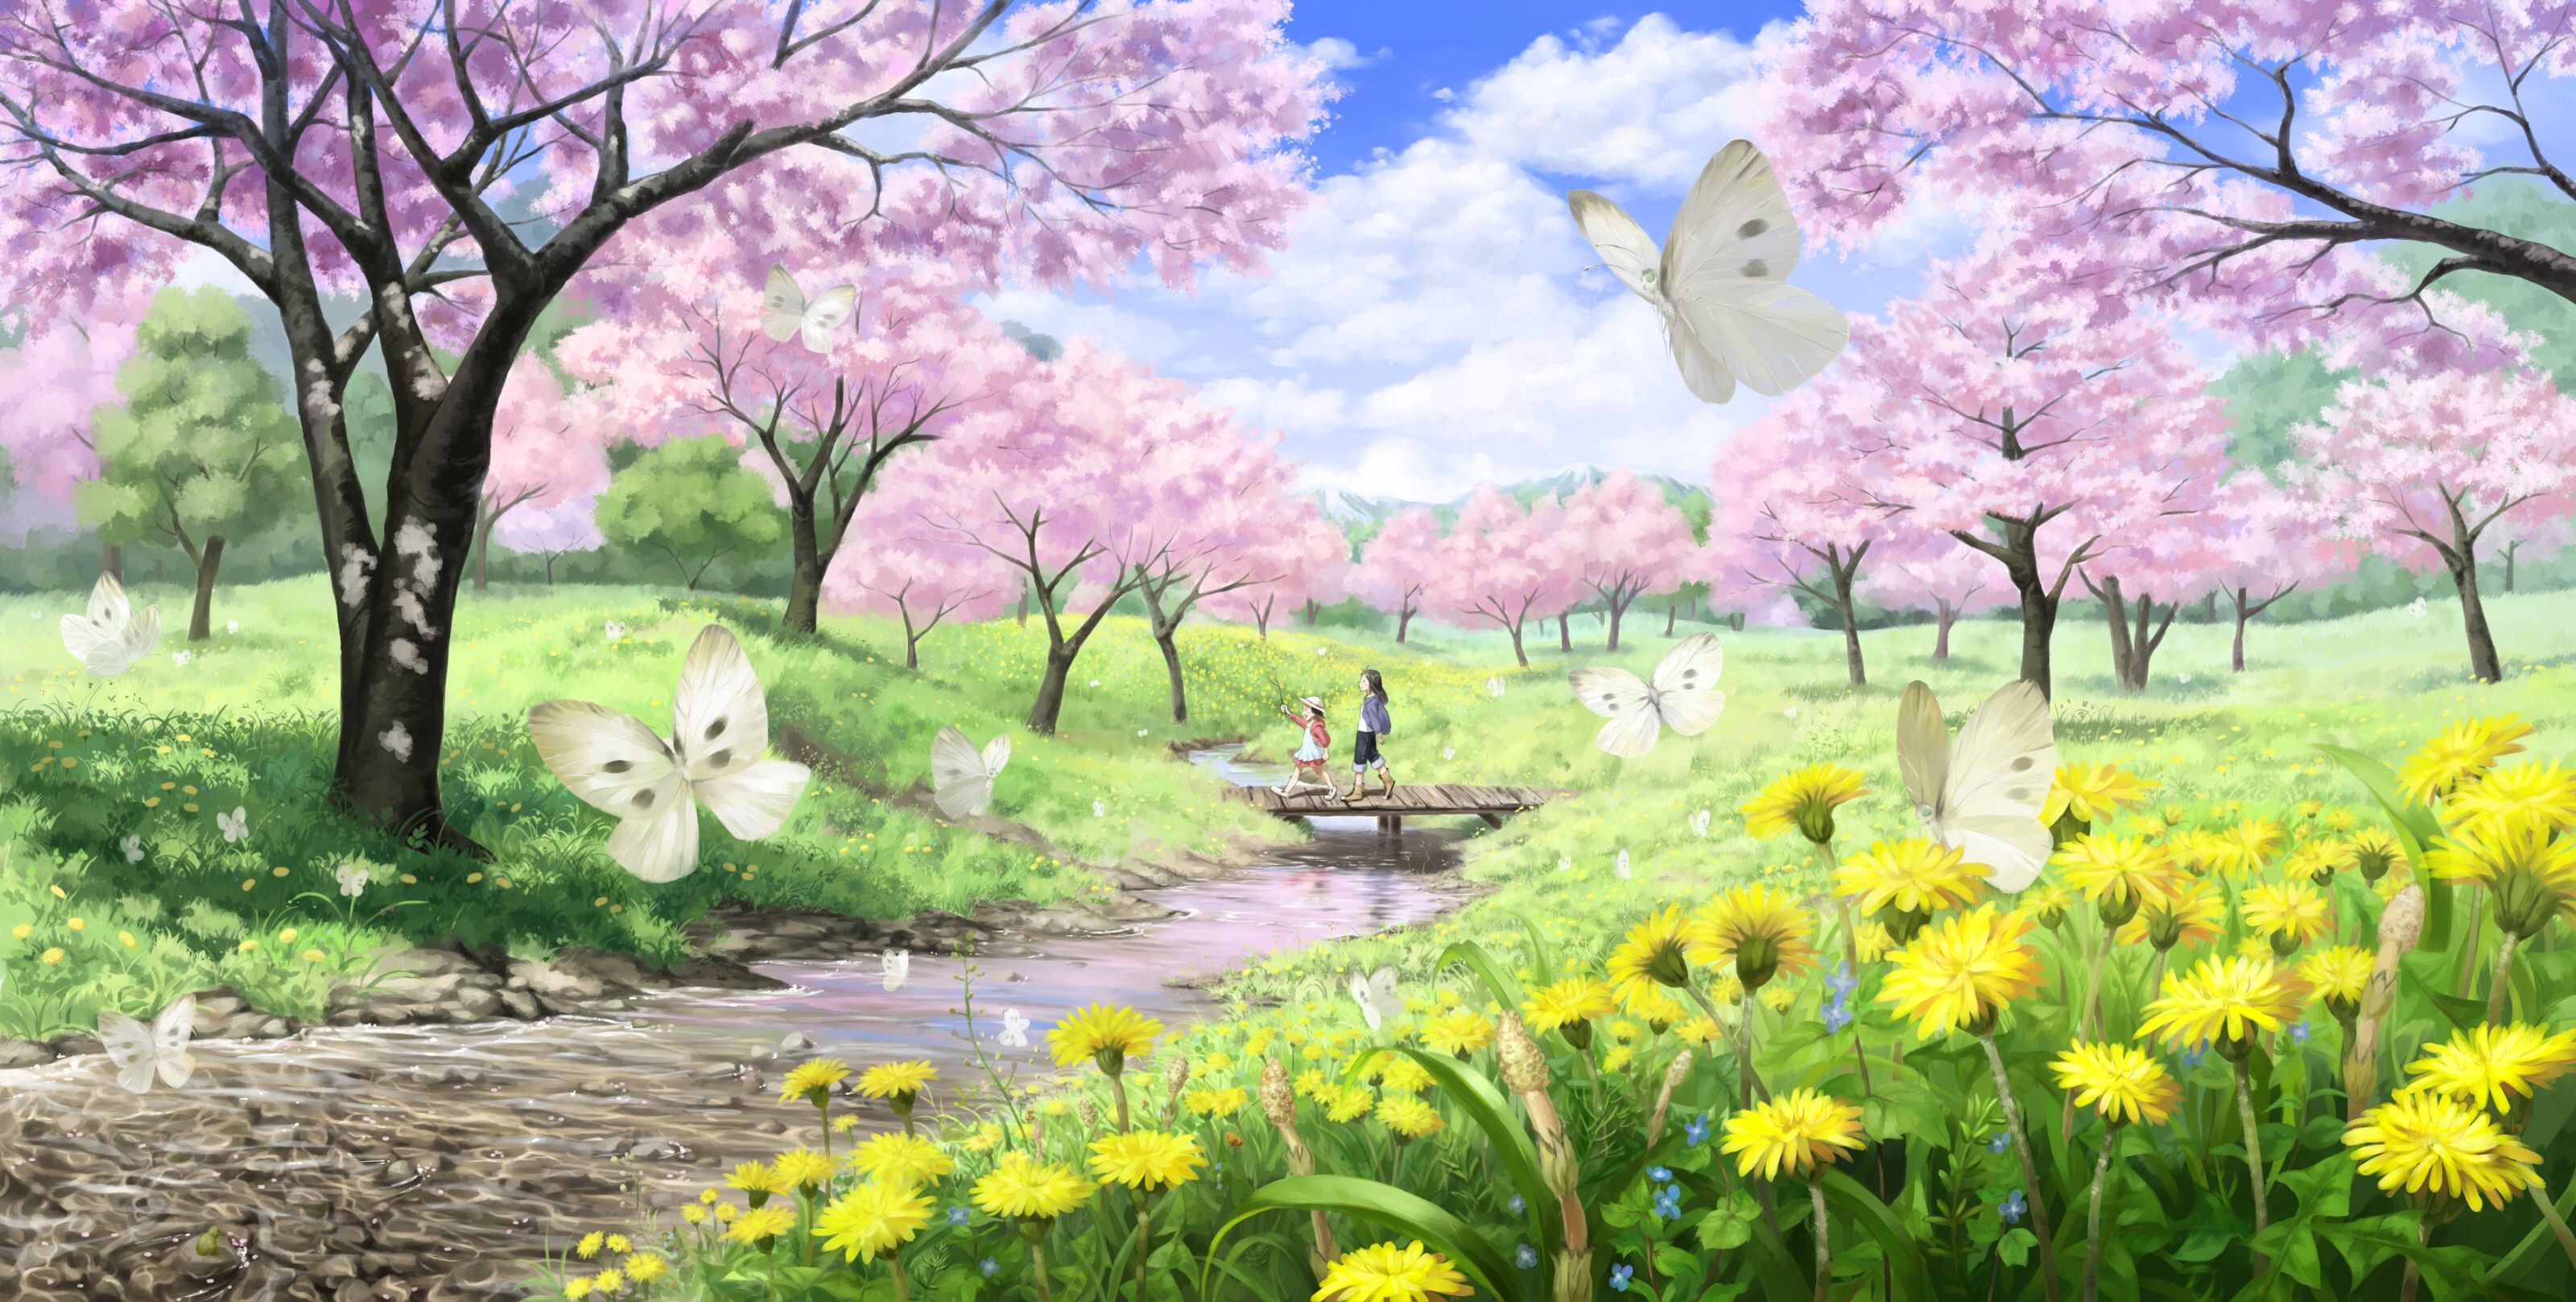 Image Dcim Dreams Spring Spring-. Spring Illustration, Spring Wallpaper, Illustration